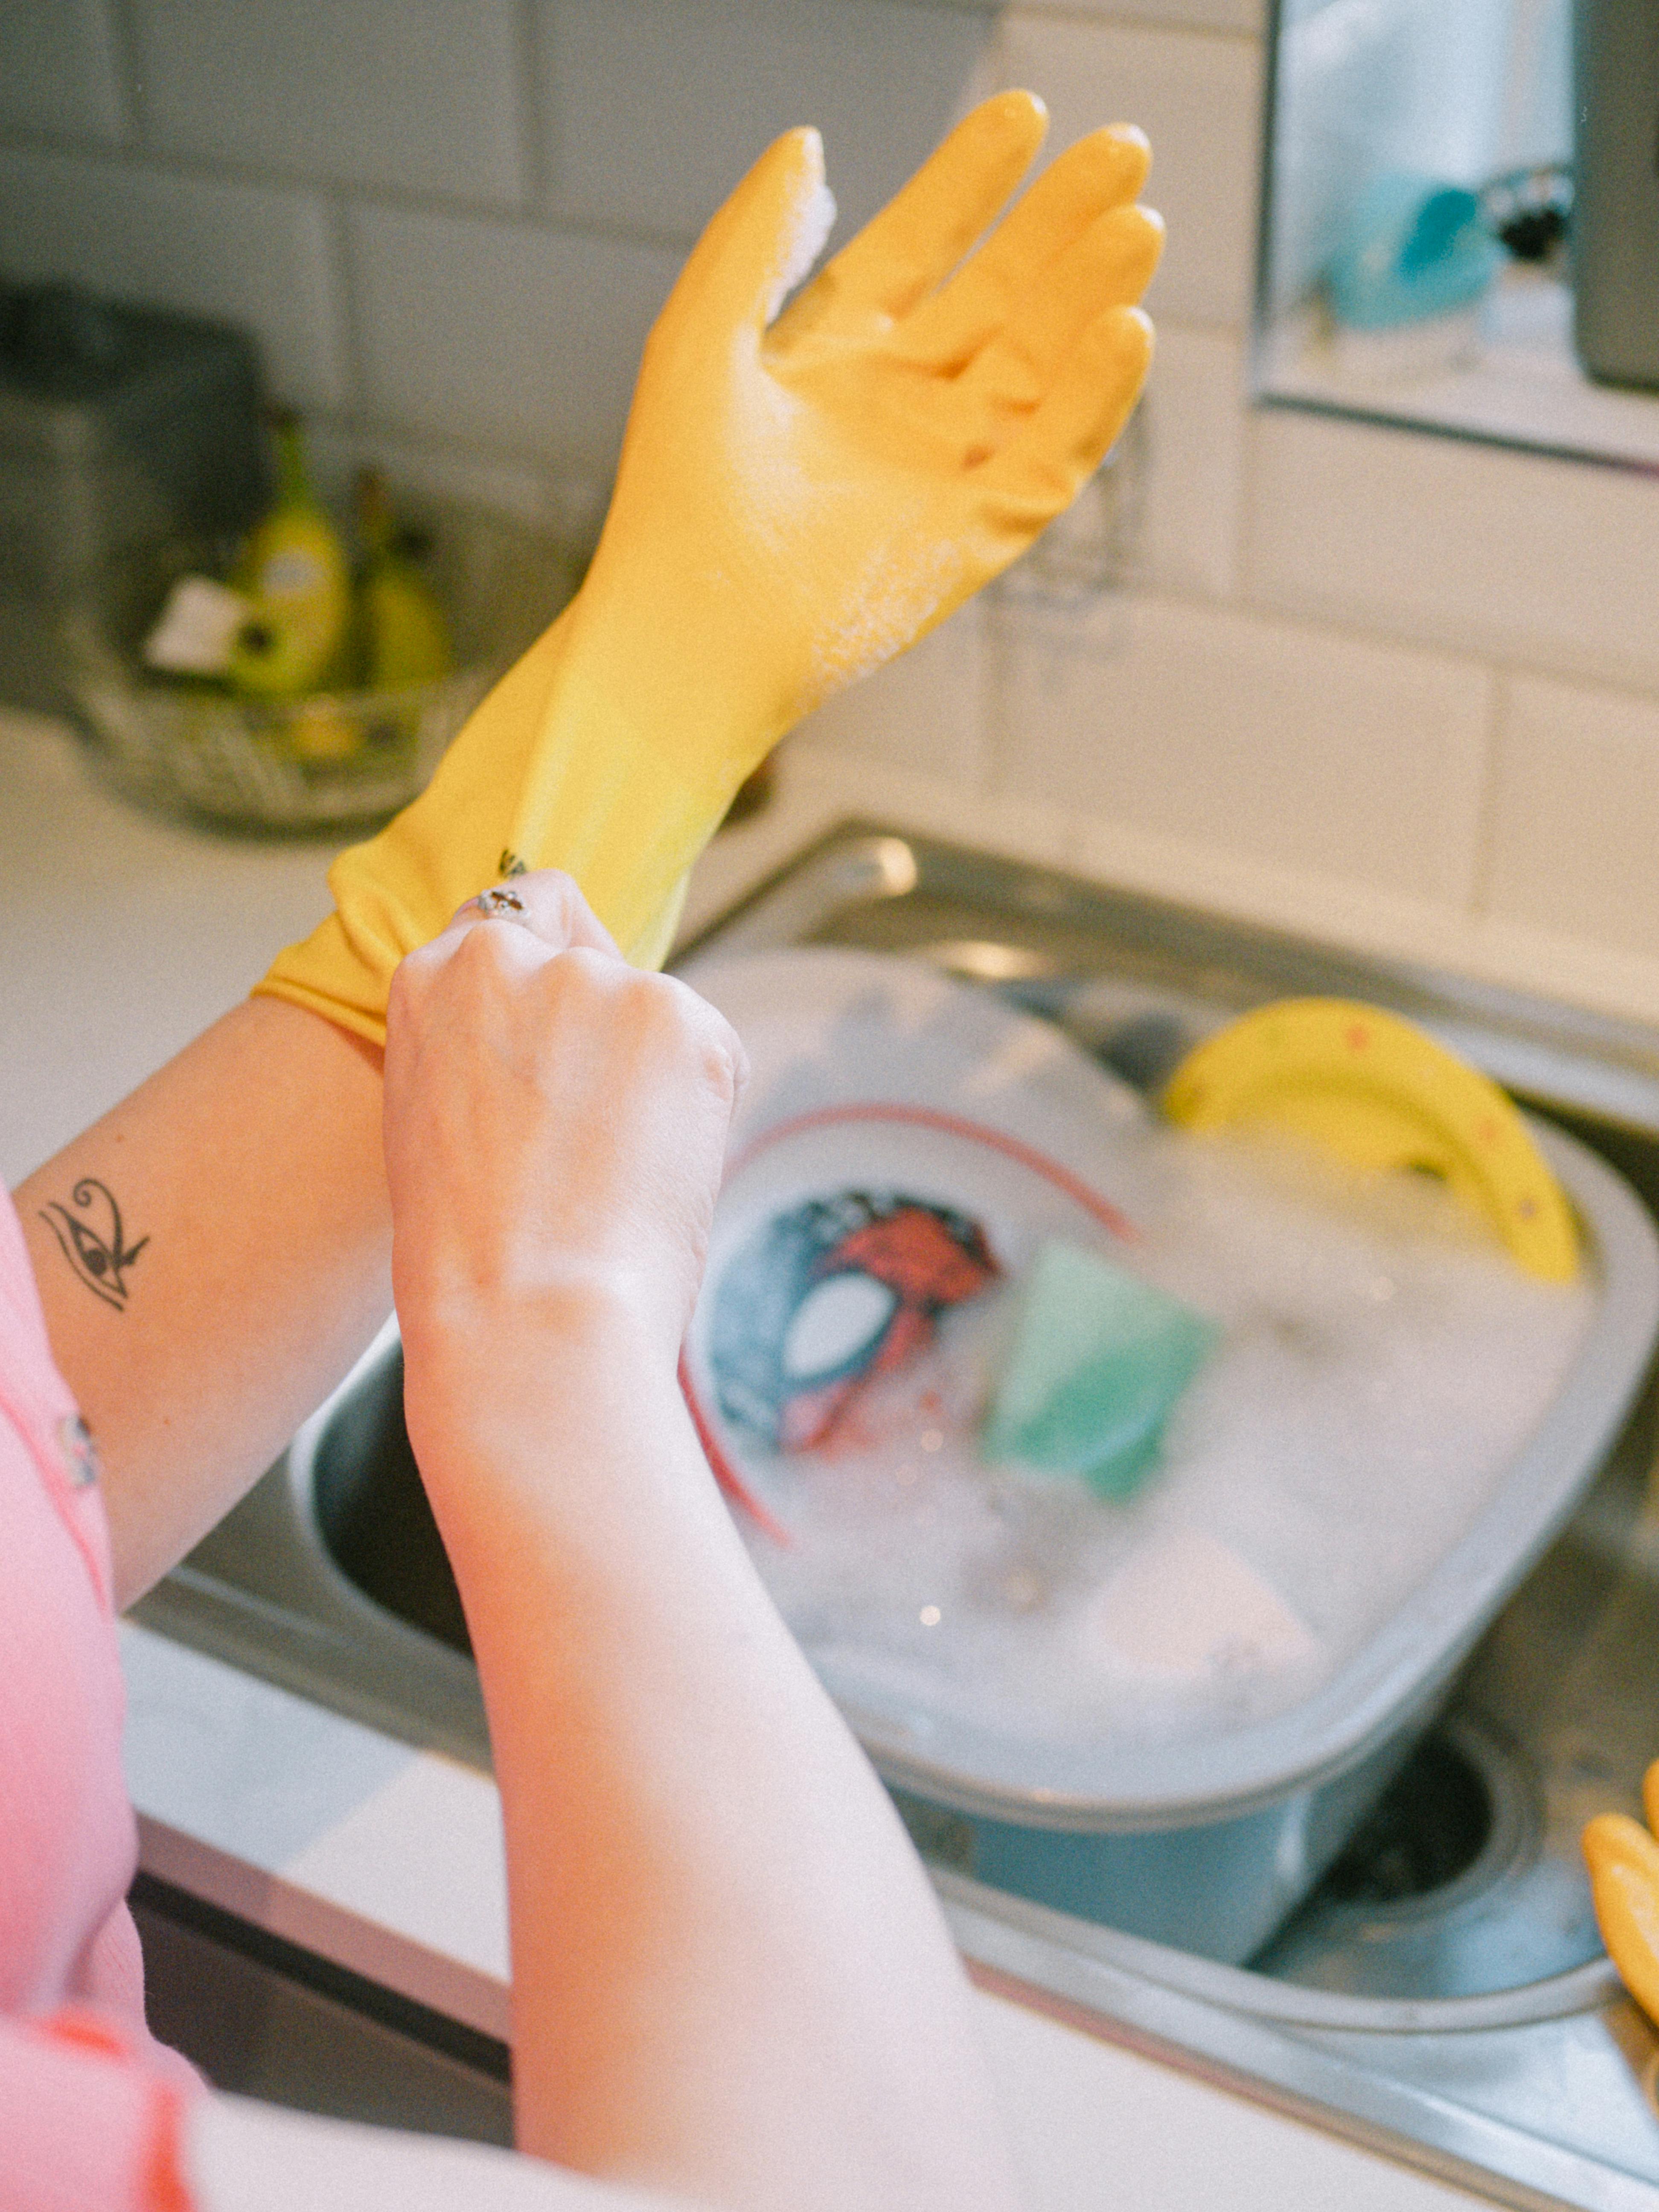 Une femme portant des gants prête à faire la vaisselle | Source : Pexels